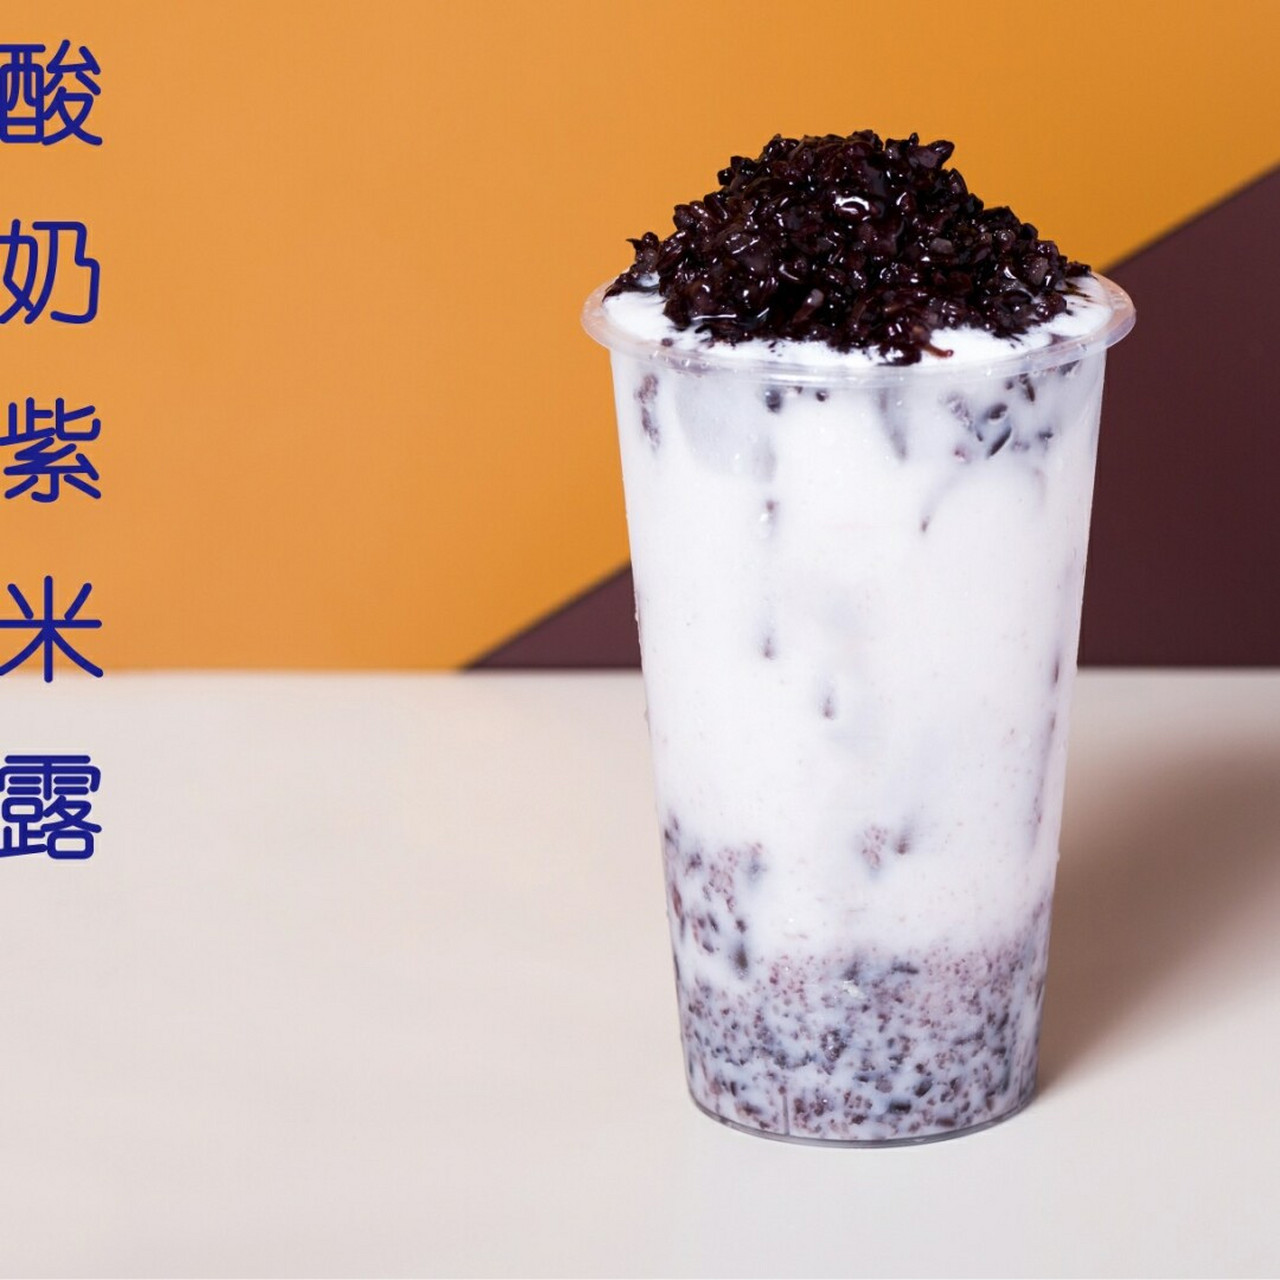 "酸奶紫米露 别具风味的酸奶吃法,其他地方吃不到的哟!